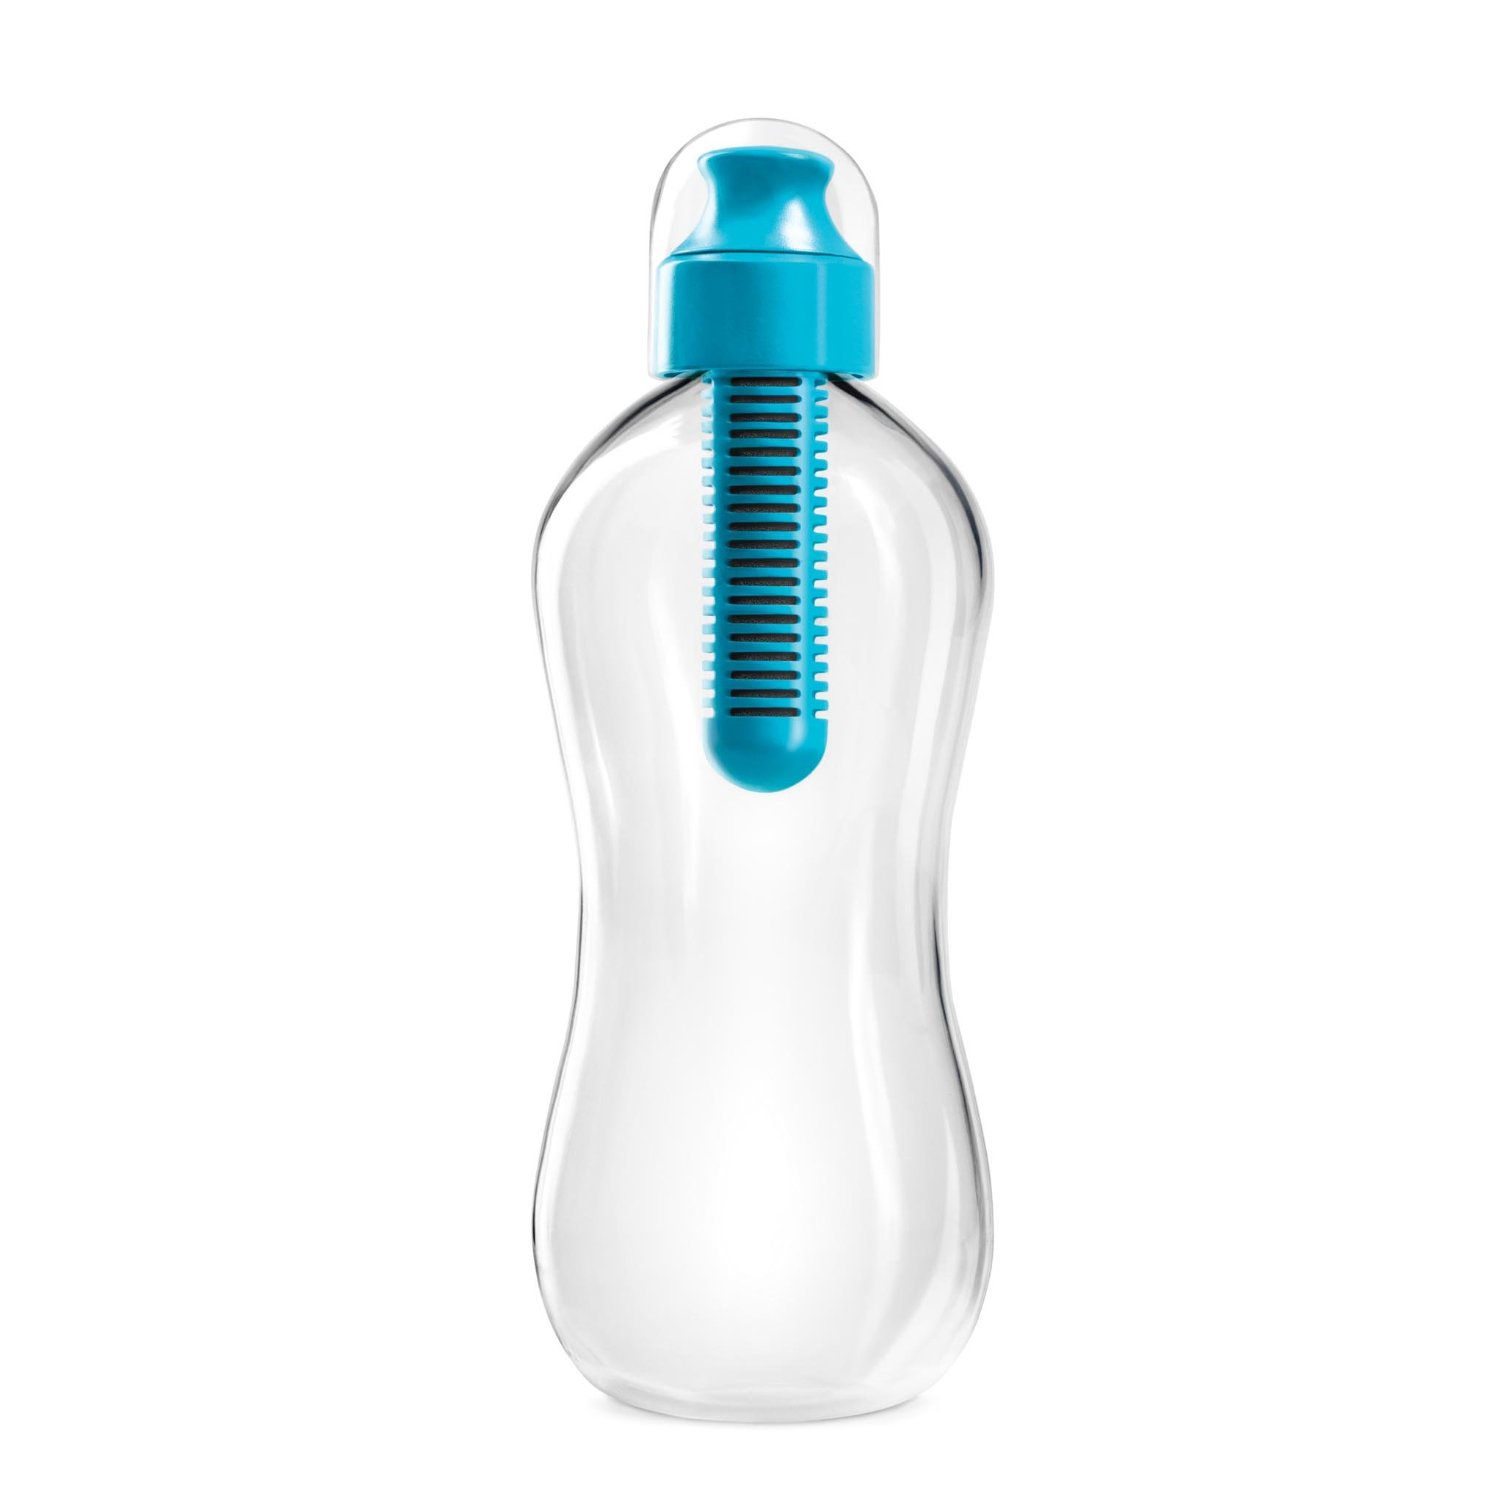 Simple - a Bobble Bottle